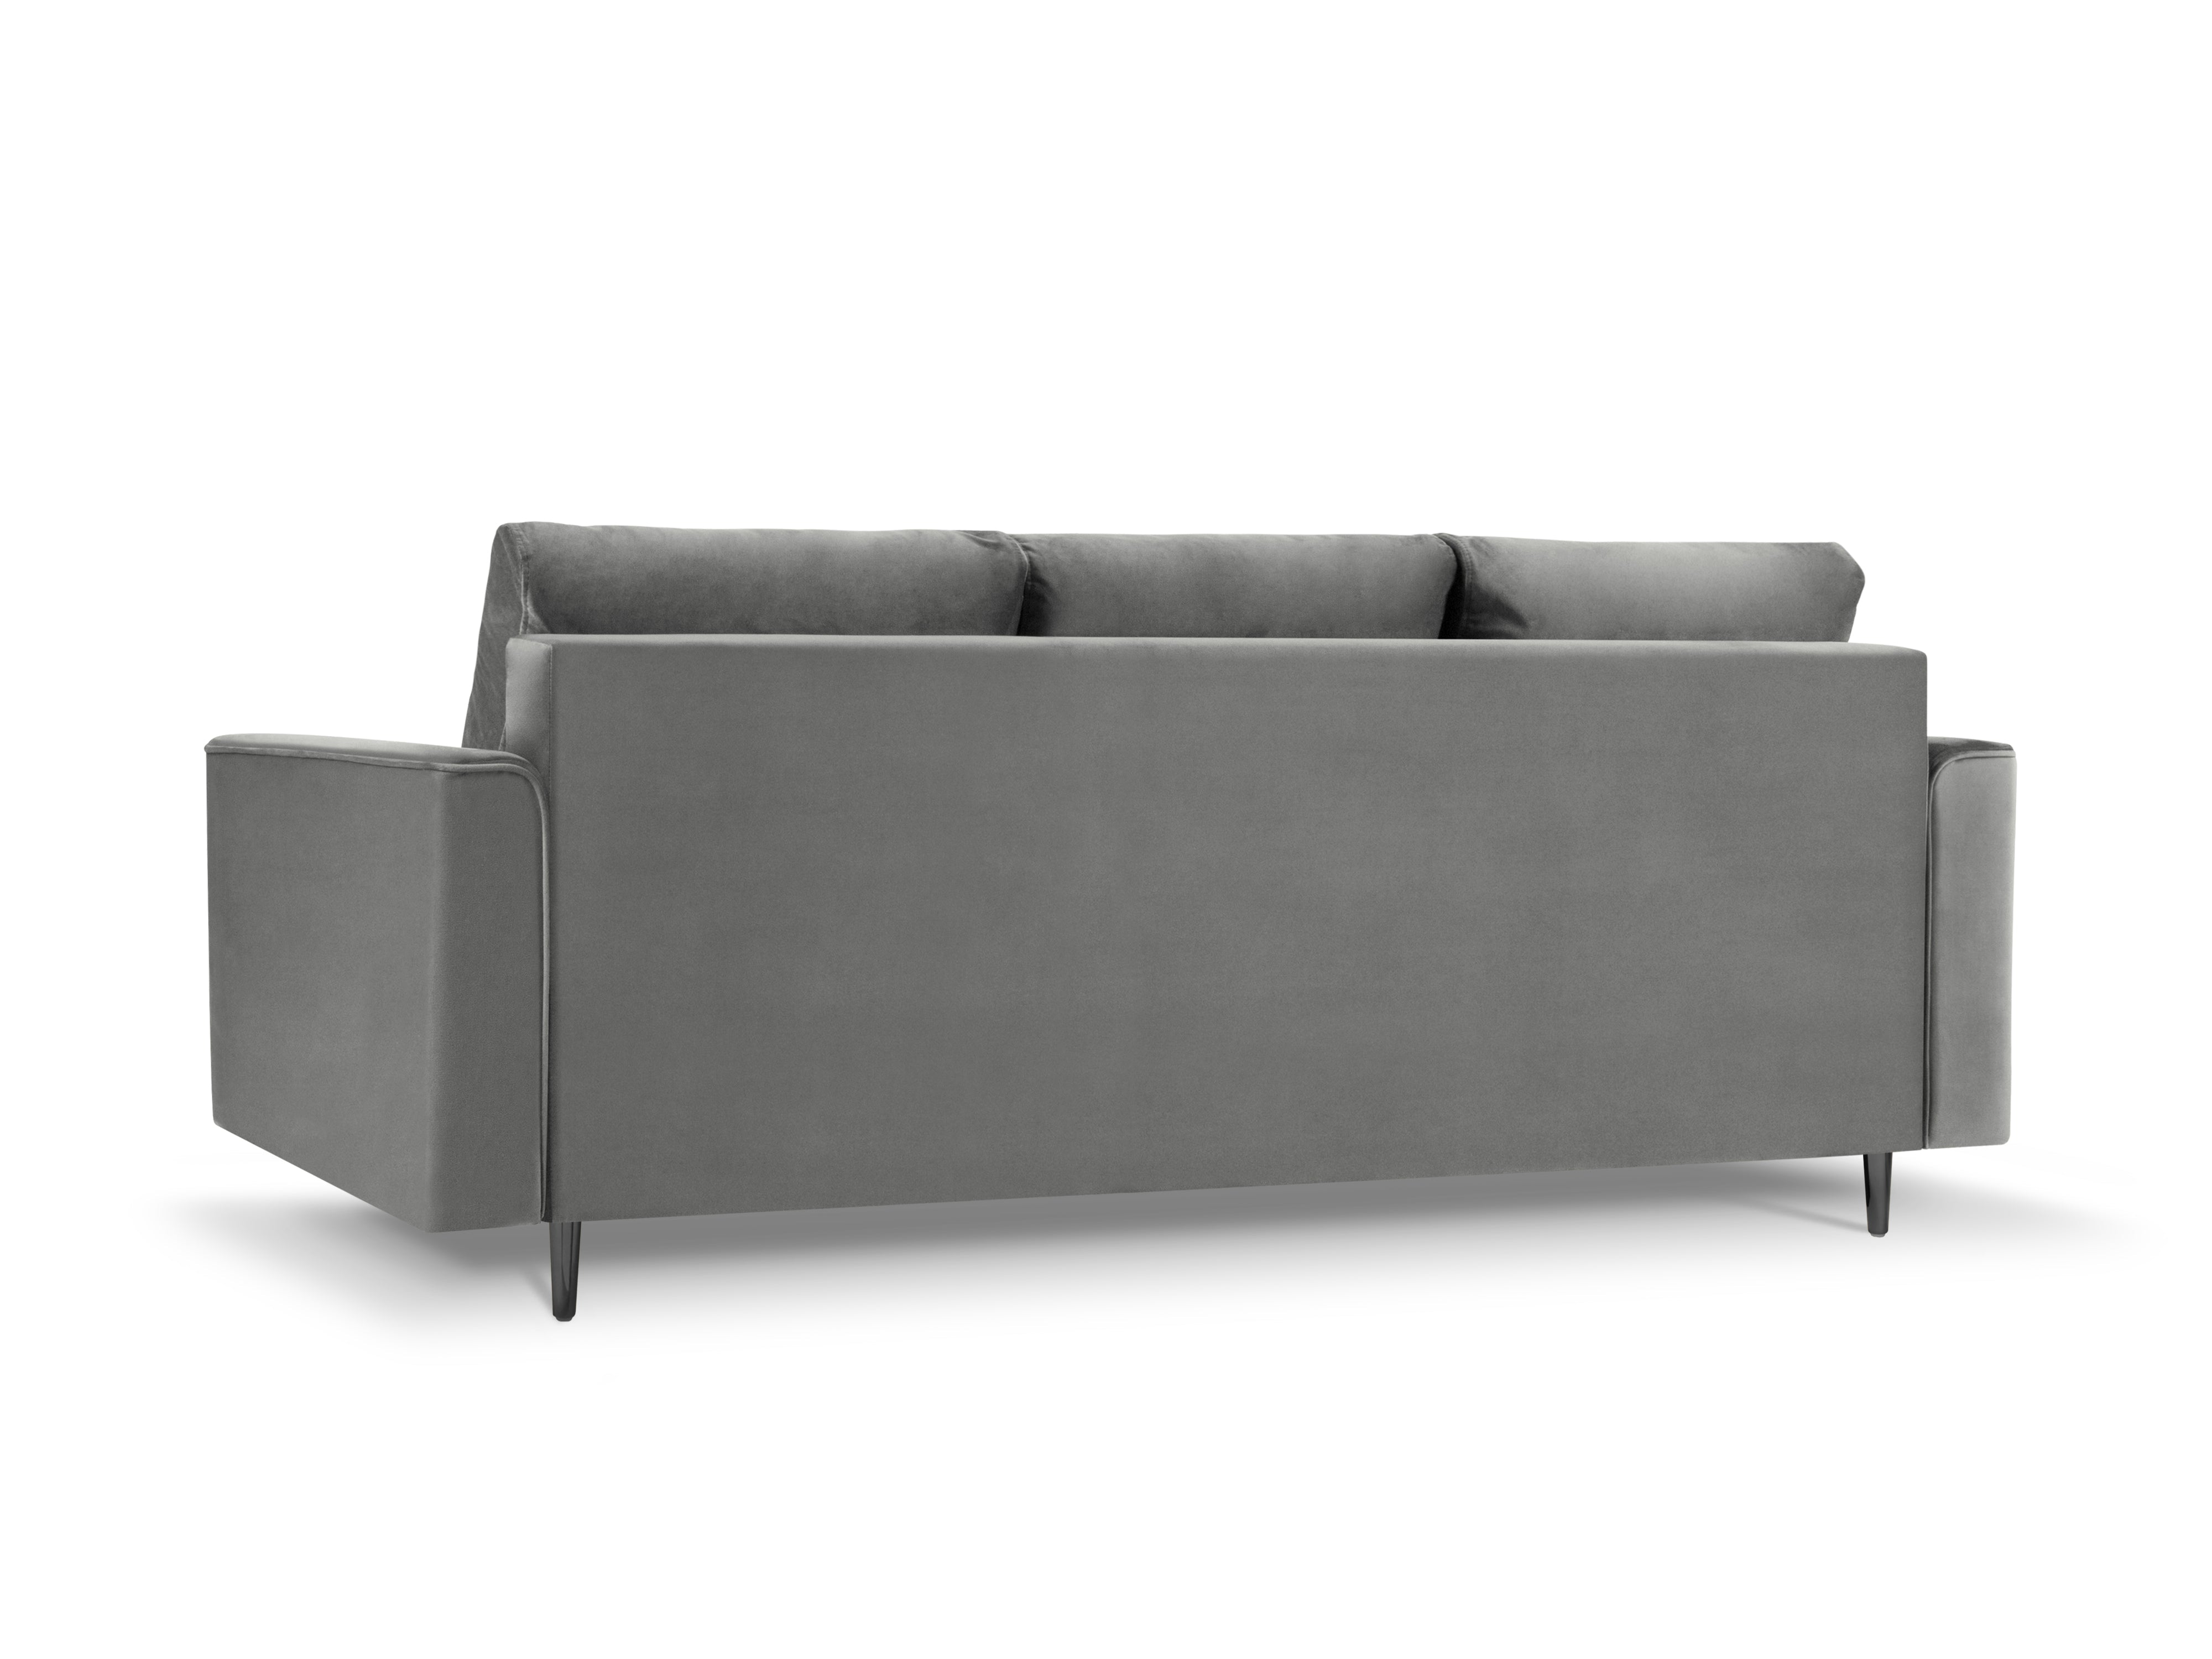 Velvet gray sofa with armrests